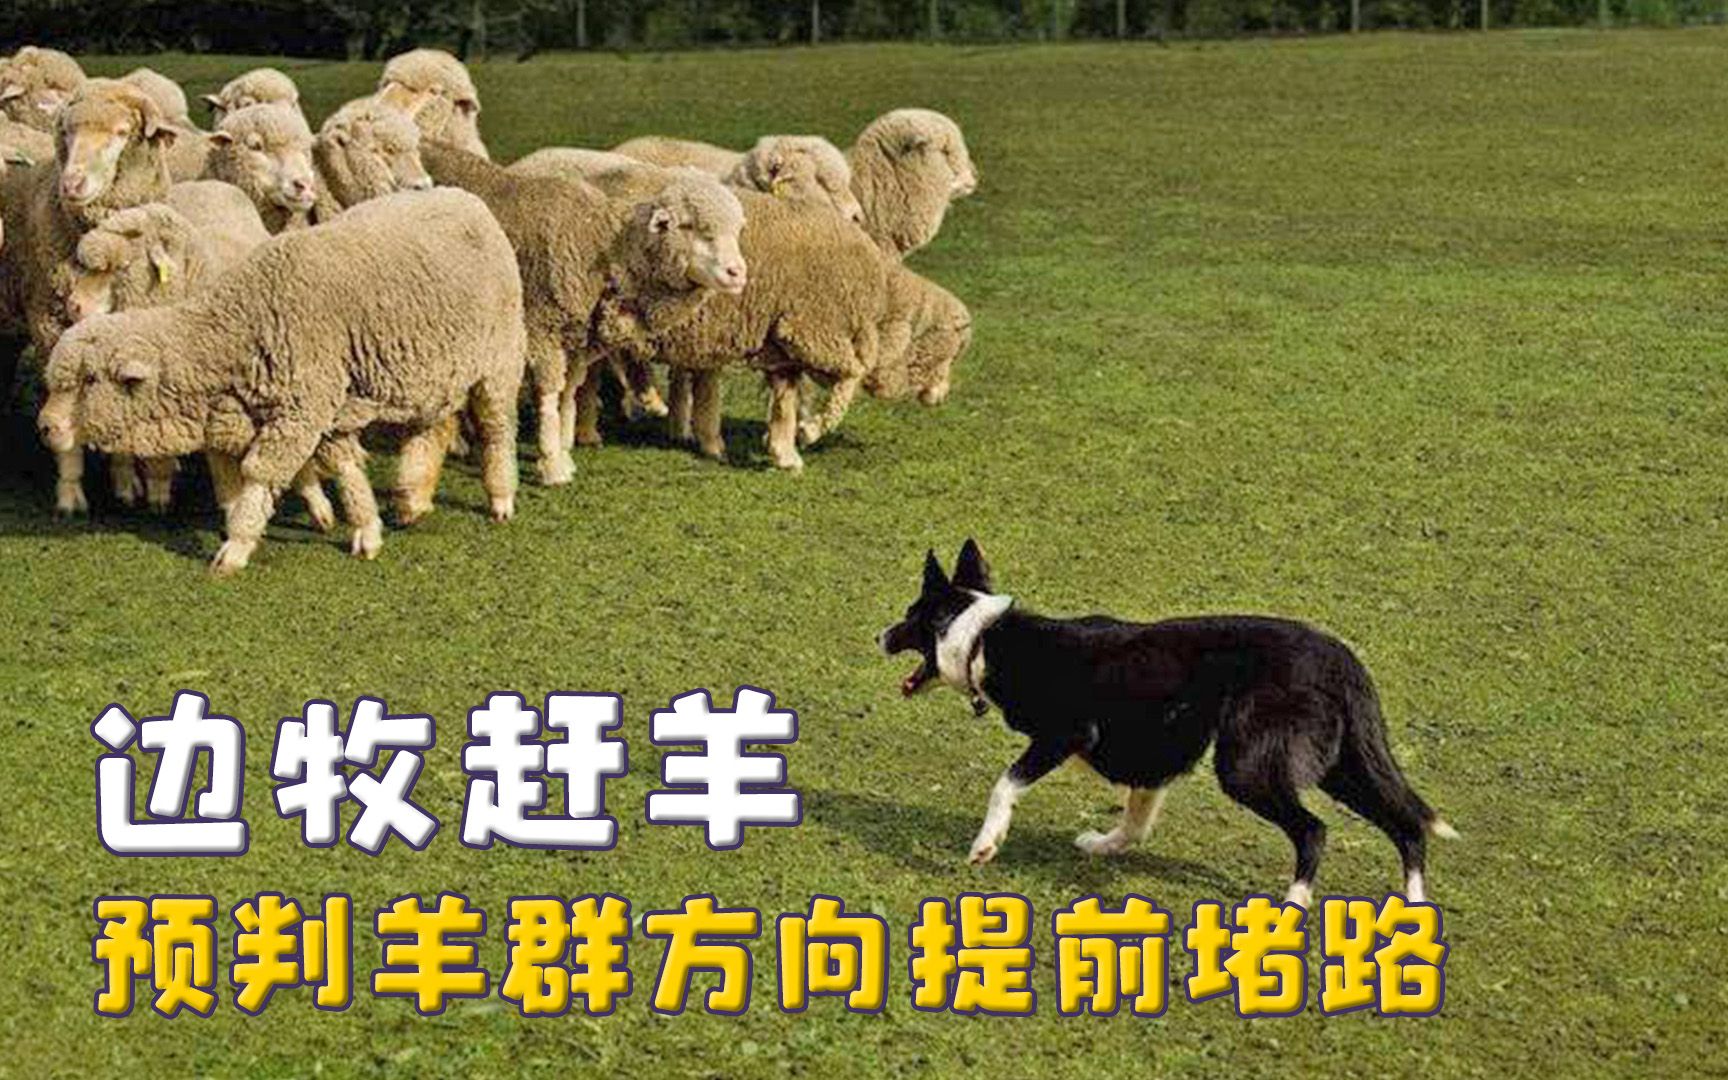 边牧的事业心，预判羊群方向提前堵路，家养也改不了牧羊血脉